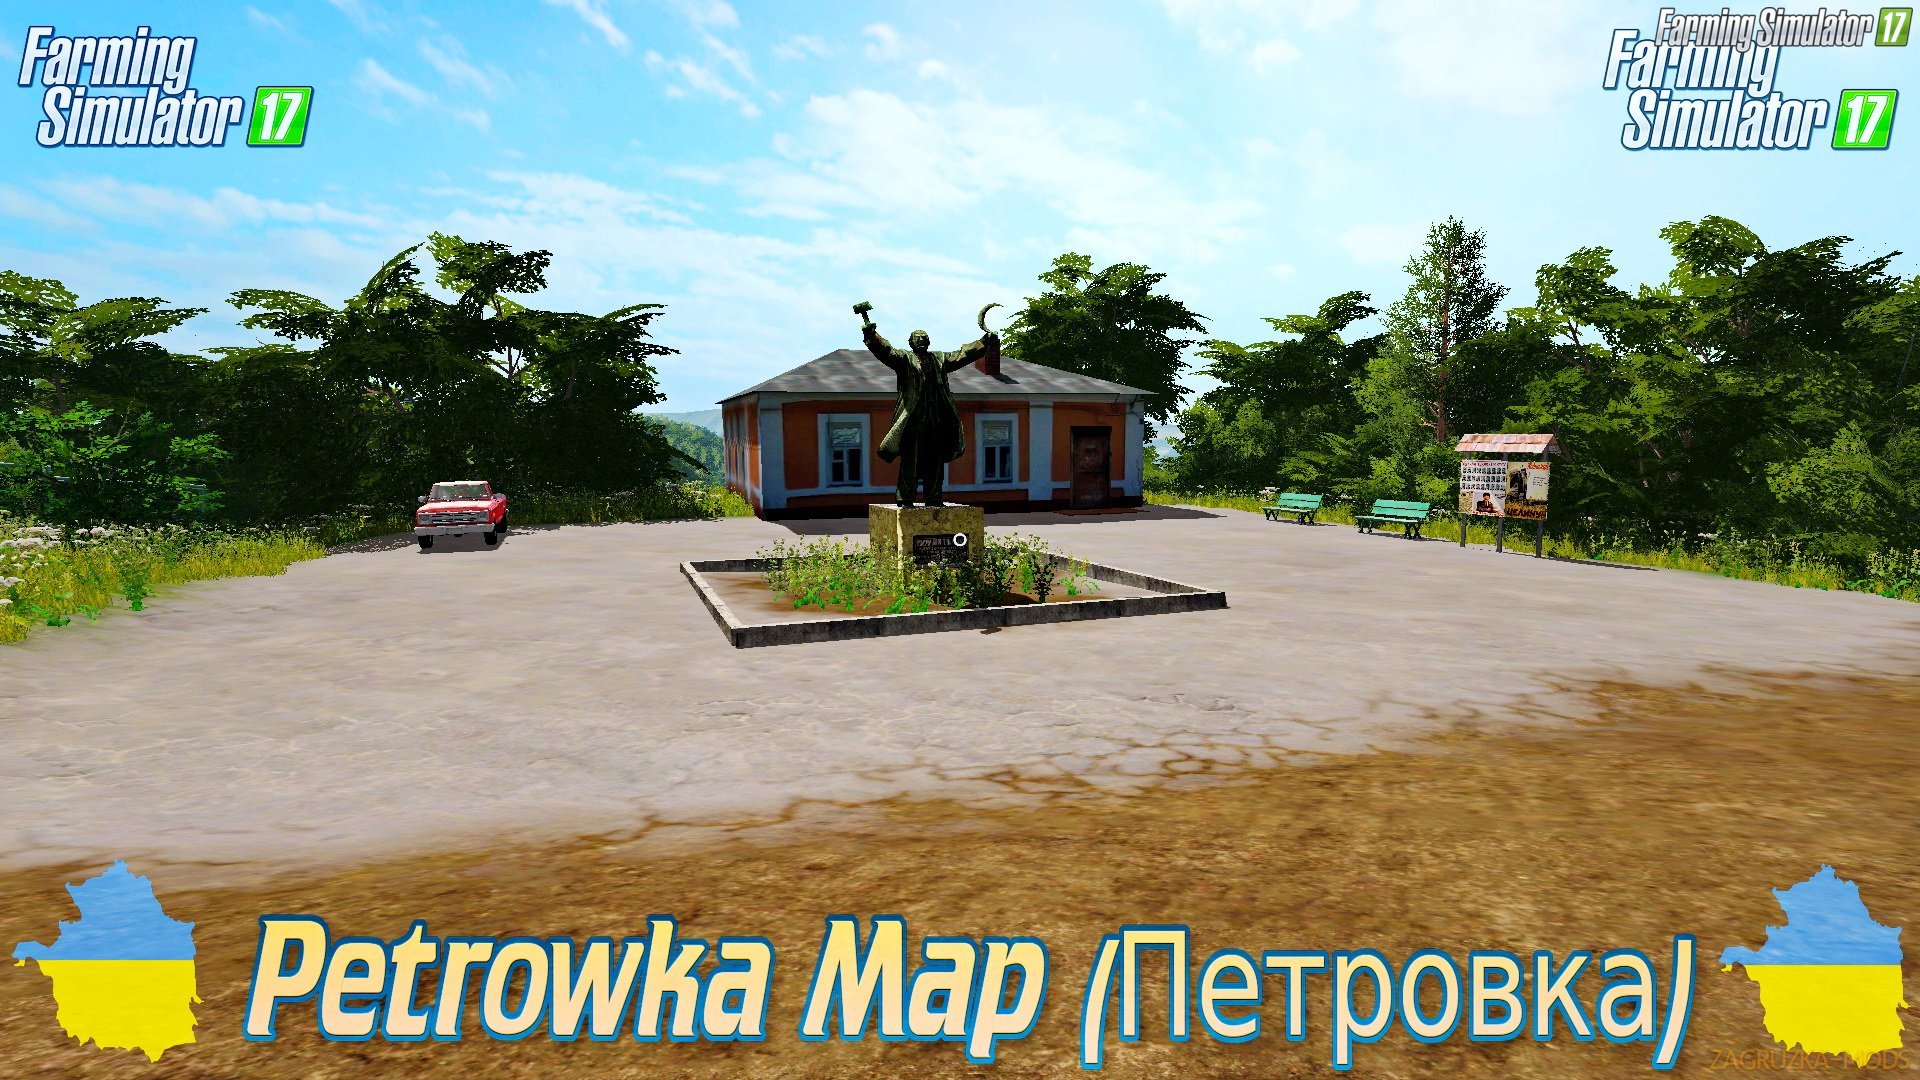 Petrowka Map (Петровка) v1.1 for FS 17